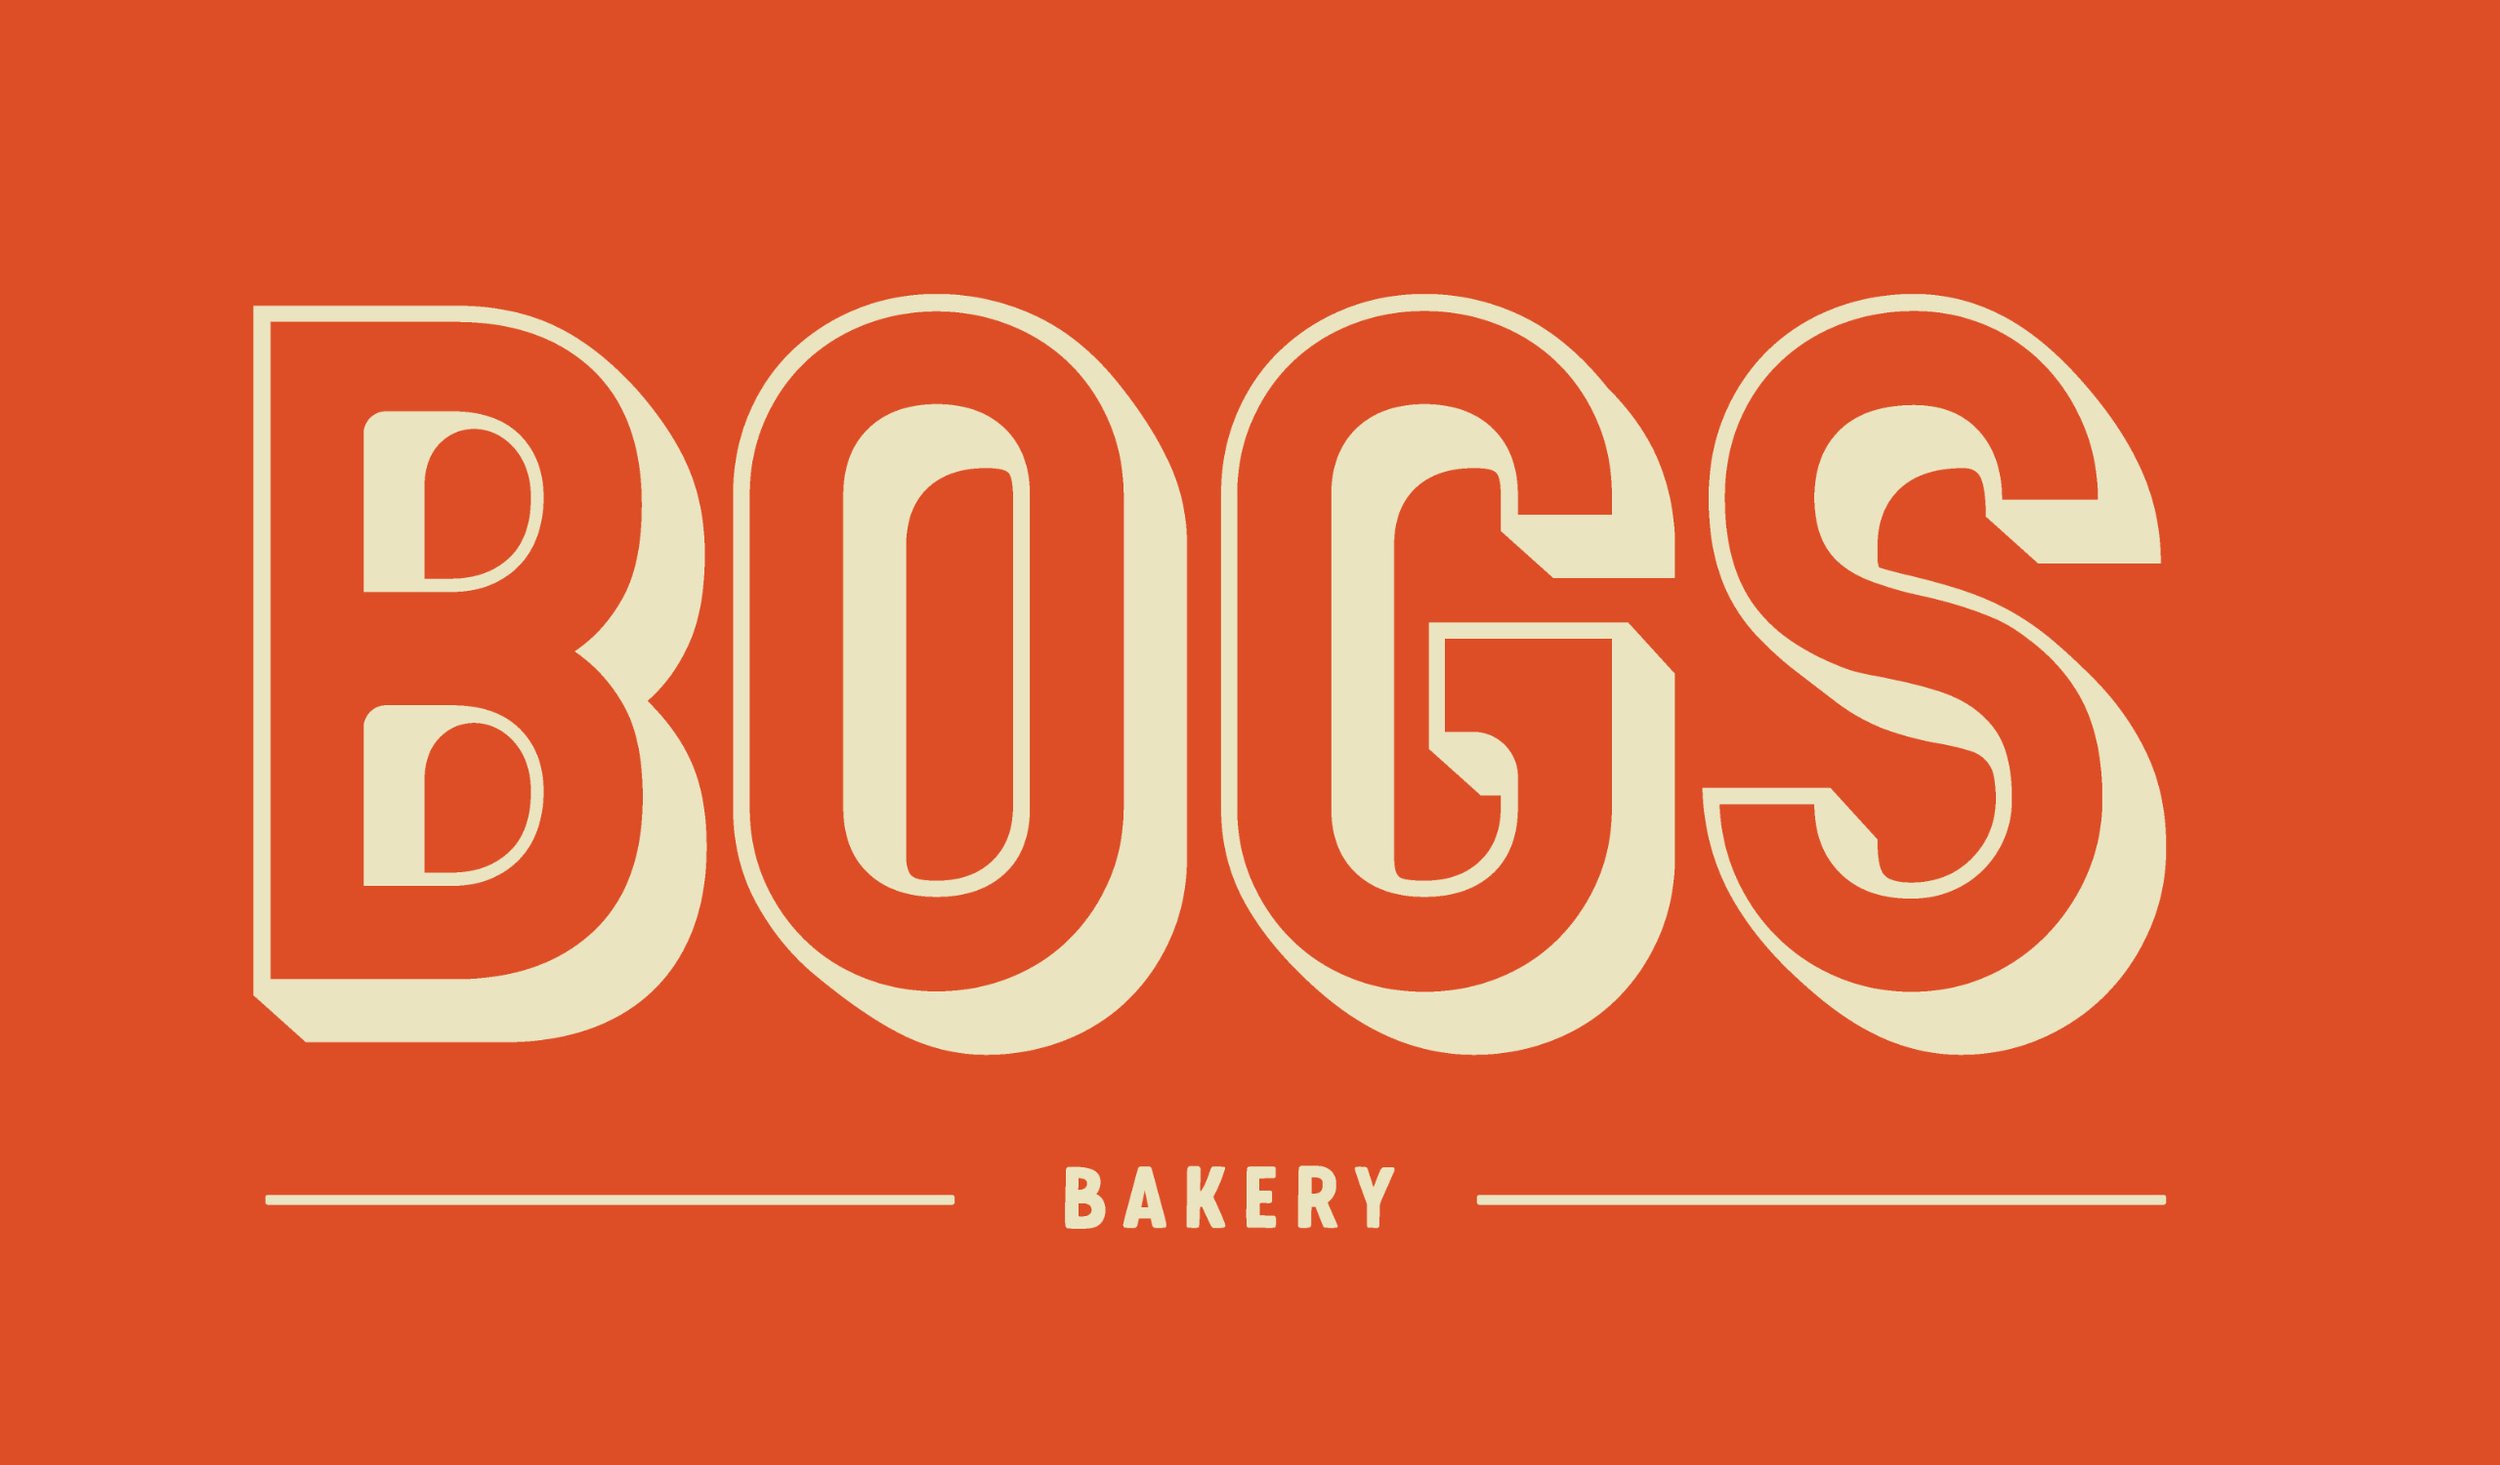 BOGS bakery